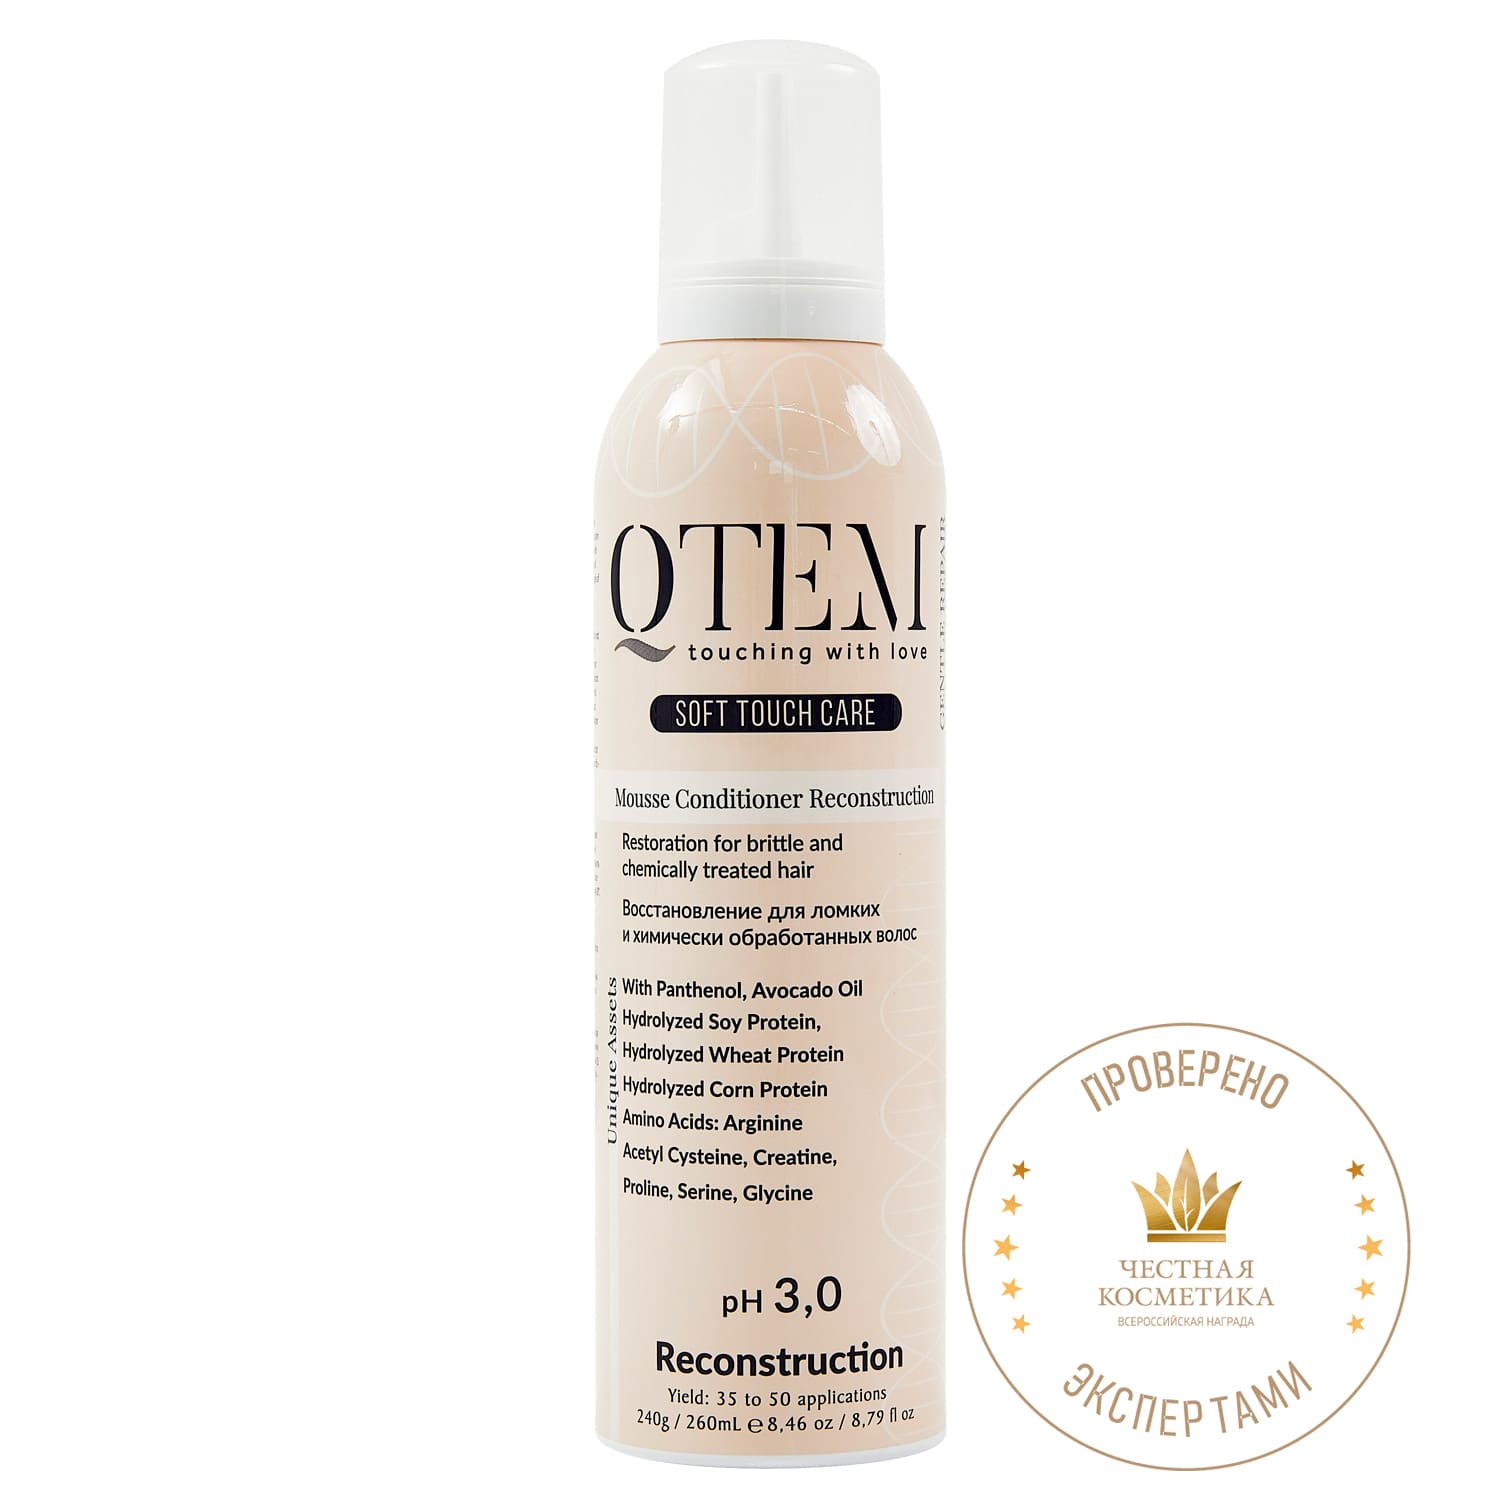 Qtem Протеиновый мусс-кондиционер Восстановление для ломких и химически обработанных волос, 260 мл (Qtem, Soft Touch Care)